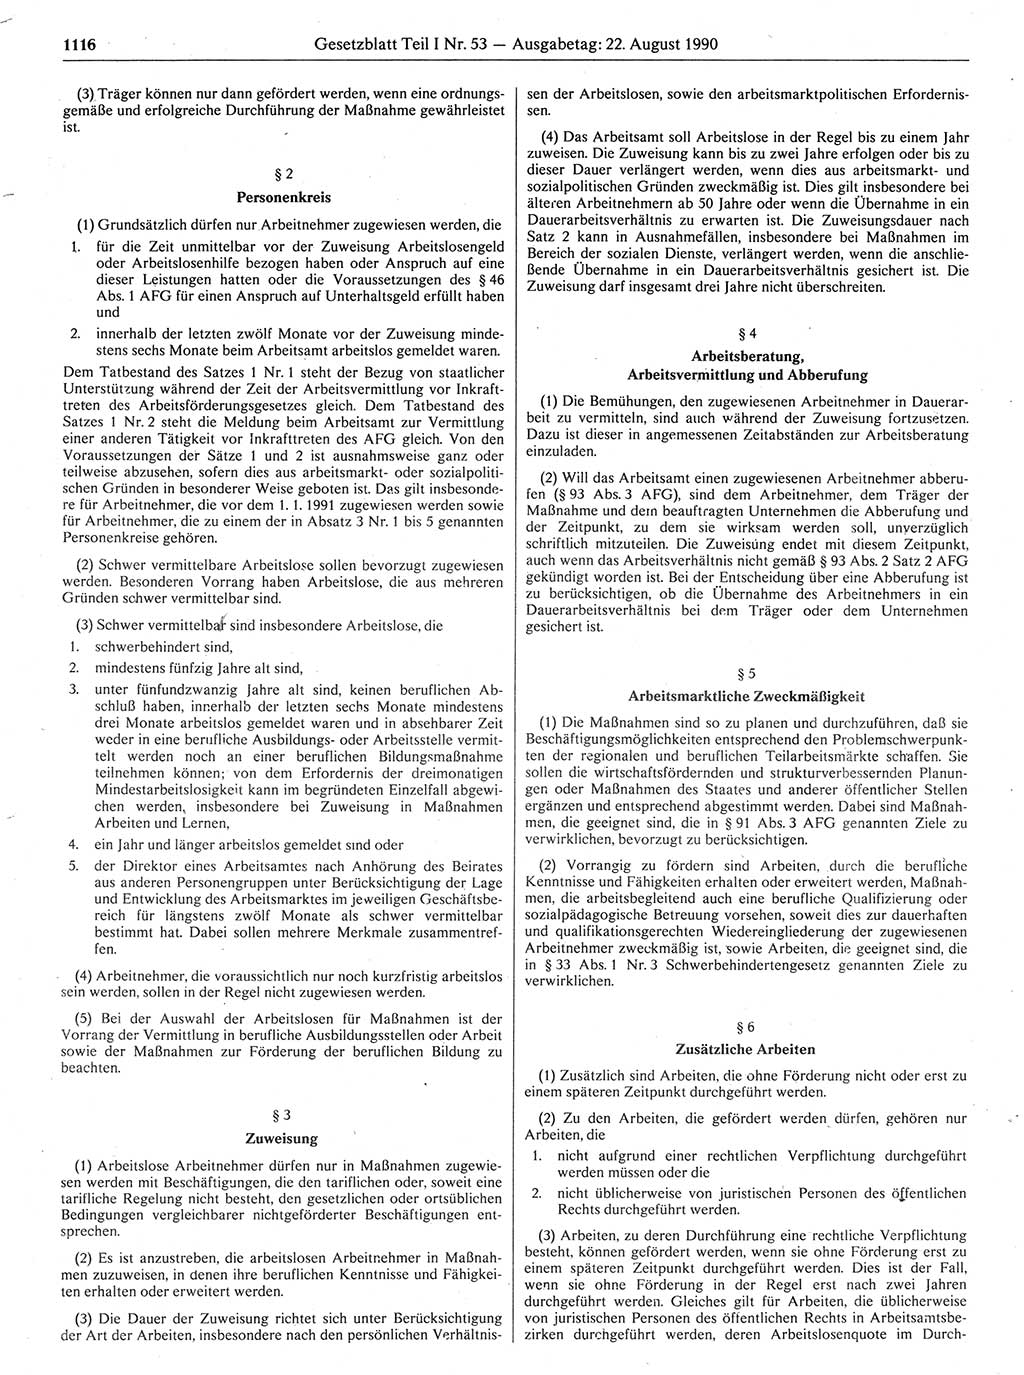 Gesetzblatt (GBl.) der Deutschen Demokratischen Republik (DDR) Teil Ⅰ 1990, Seite 1116 (GBl. DDR Ⅰ 1990, S. 1116)